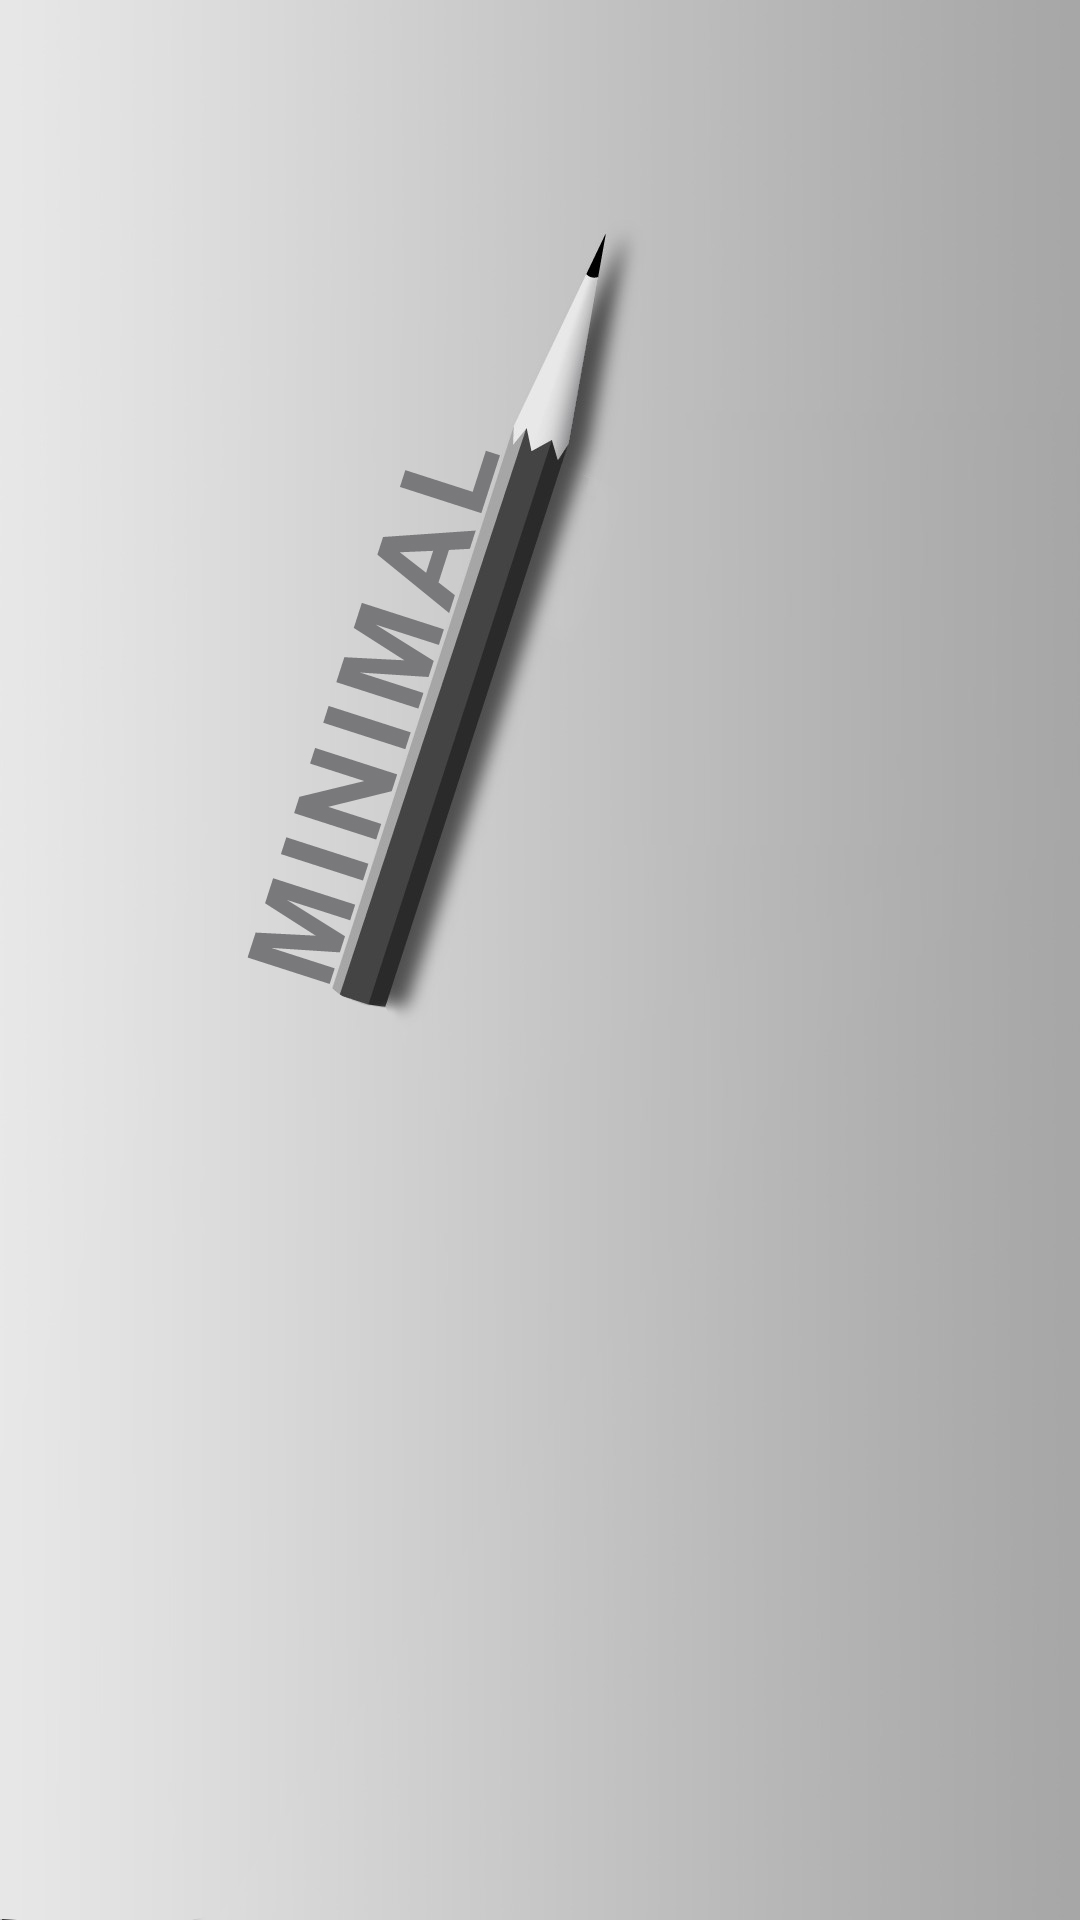 Pencil Minimal Wallpaper - Pencil Iphone - HD Wallpaper 